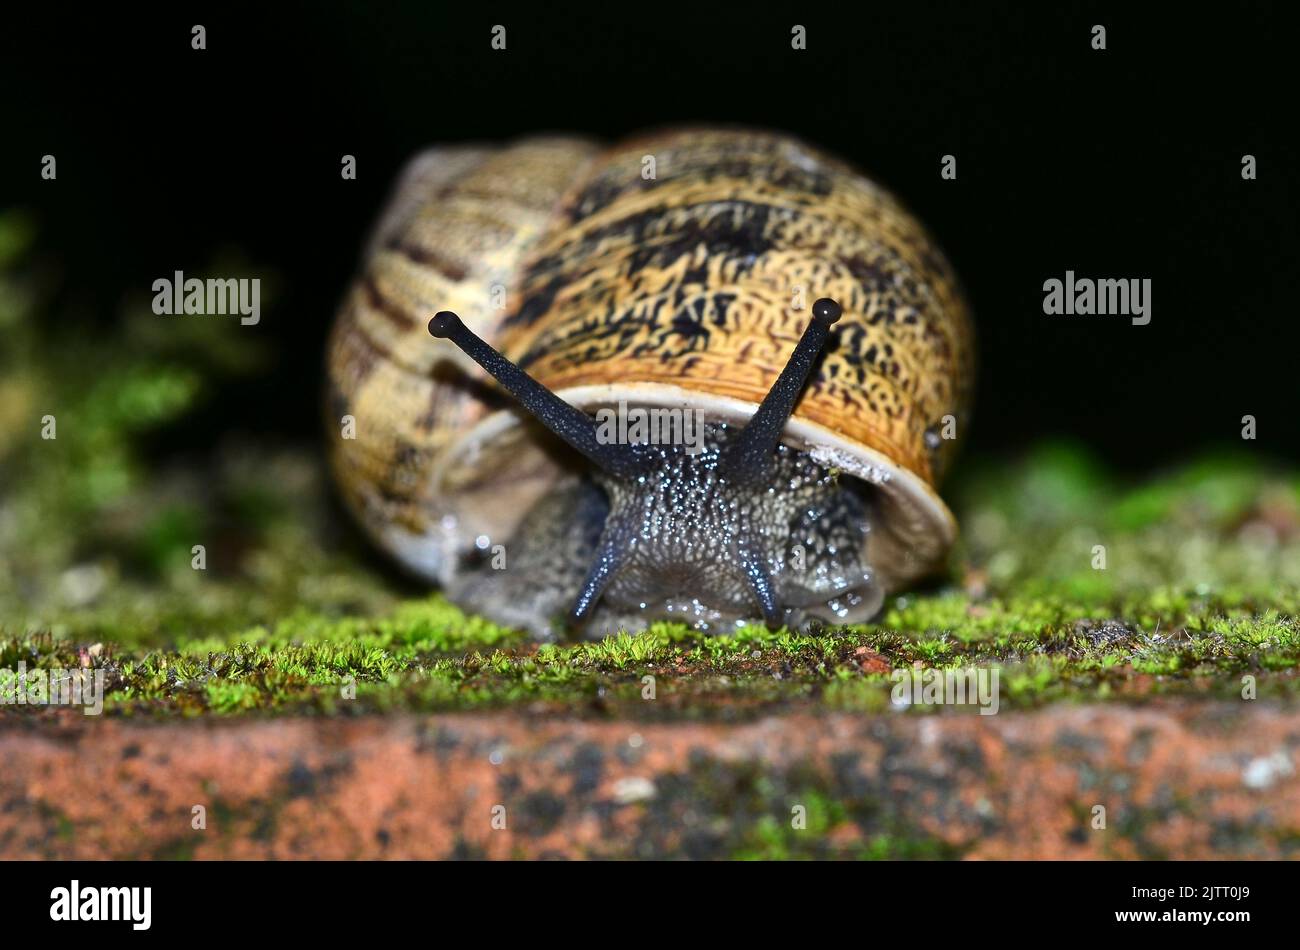 Garden snail on brick wall Stock Photo